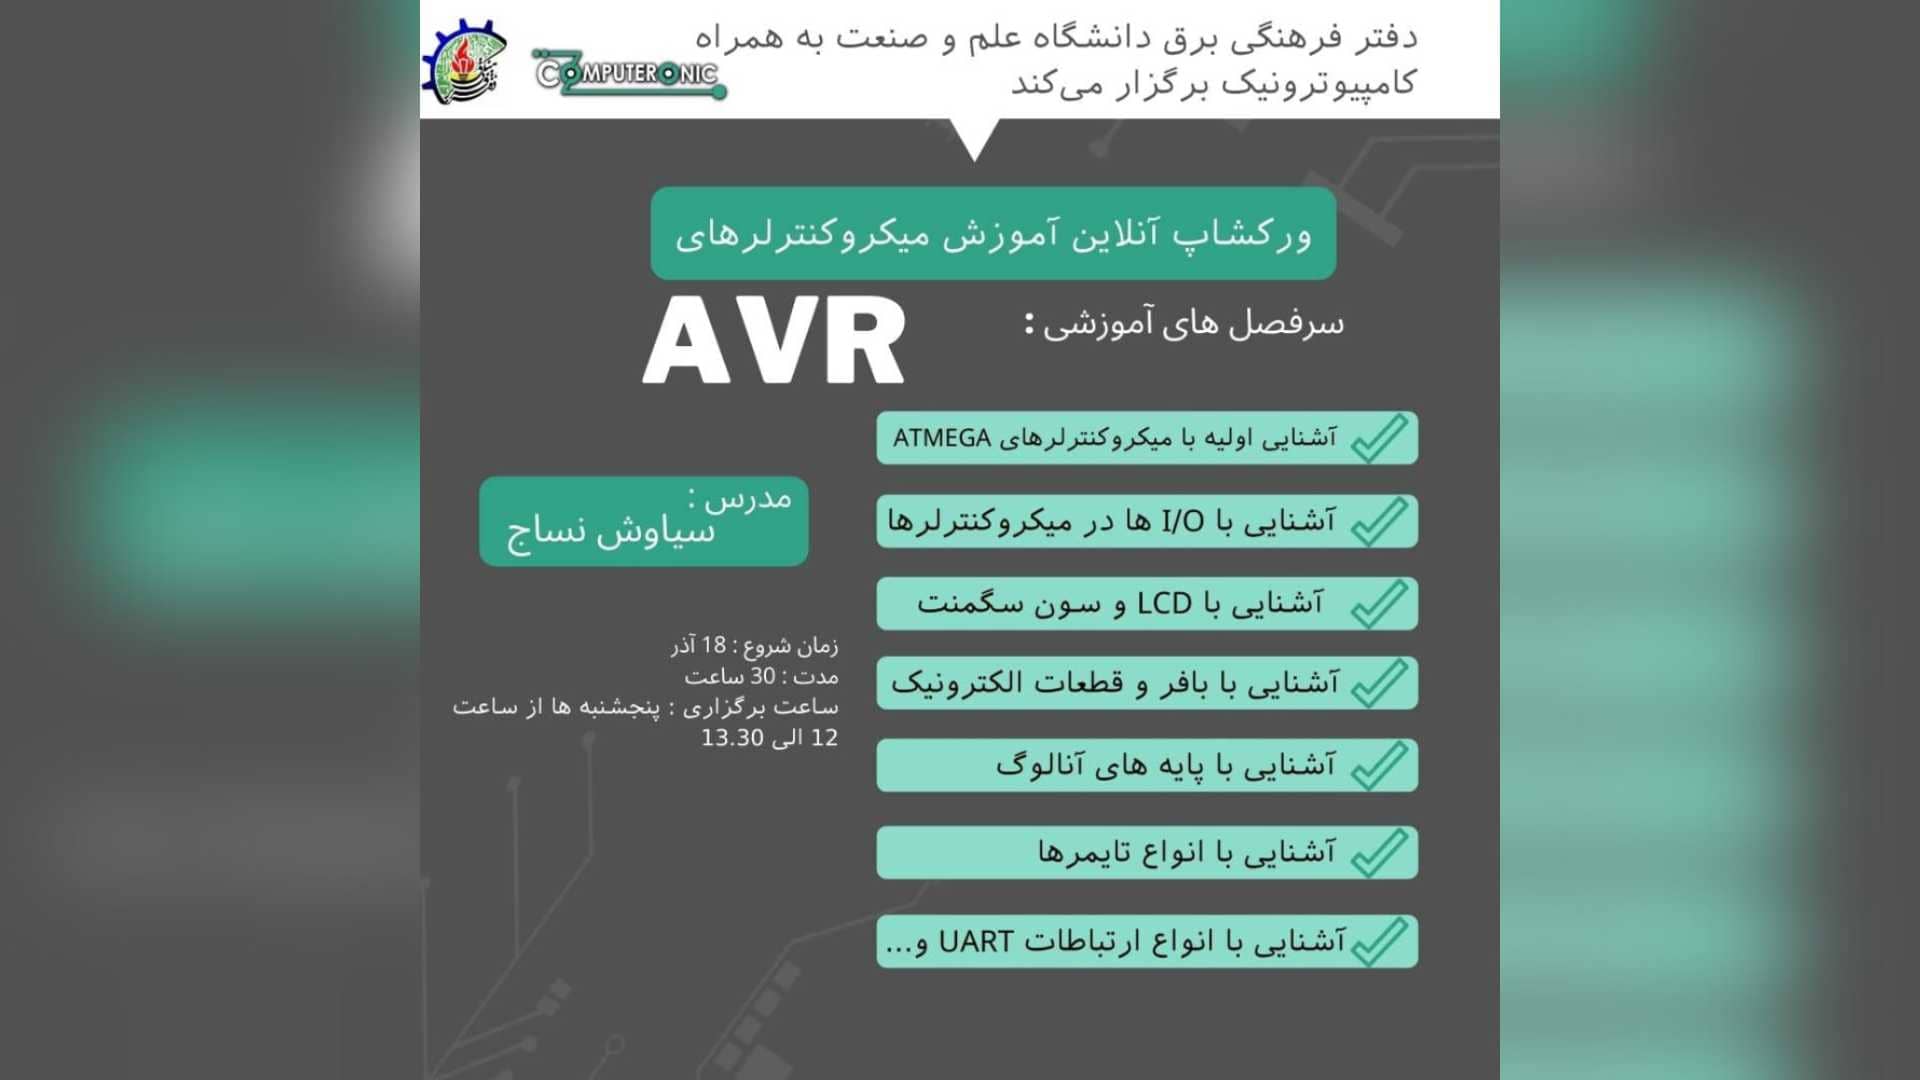 ورکشاپ مشترک آنلاین میکروکنترلرهای AVR کامپیوترونیک و دانشگاه علم و صنعت